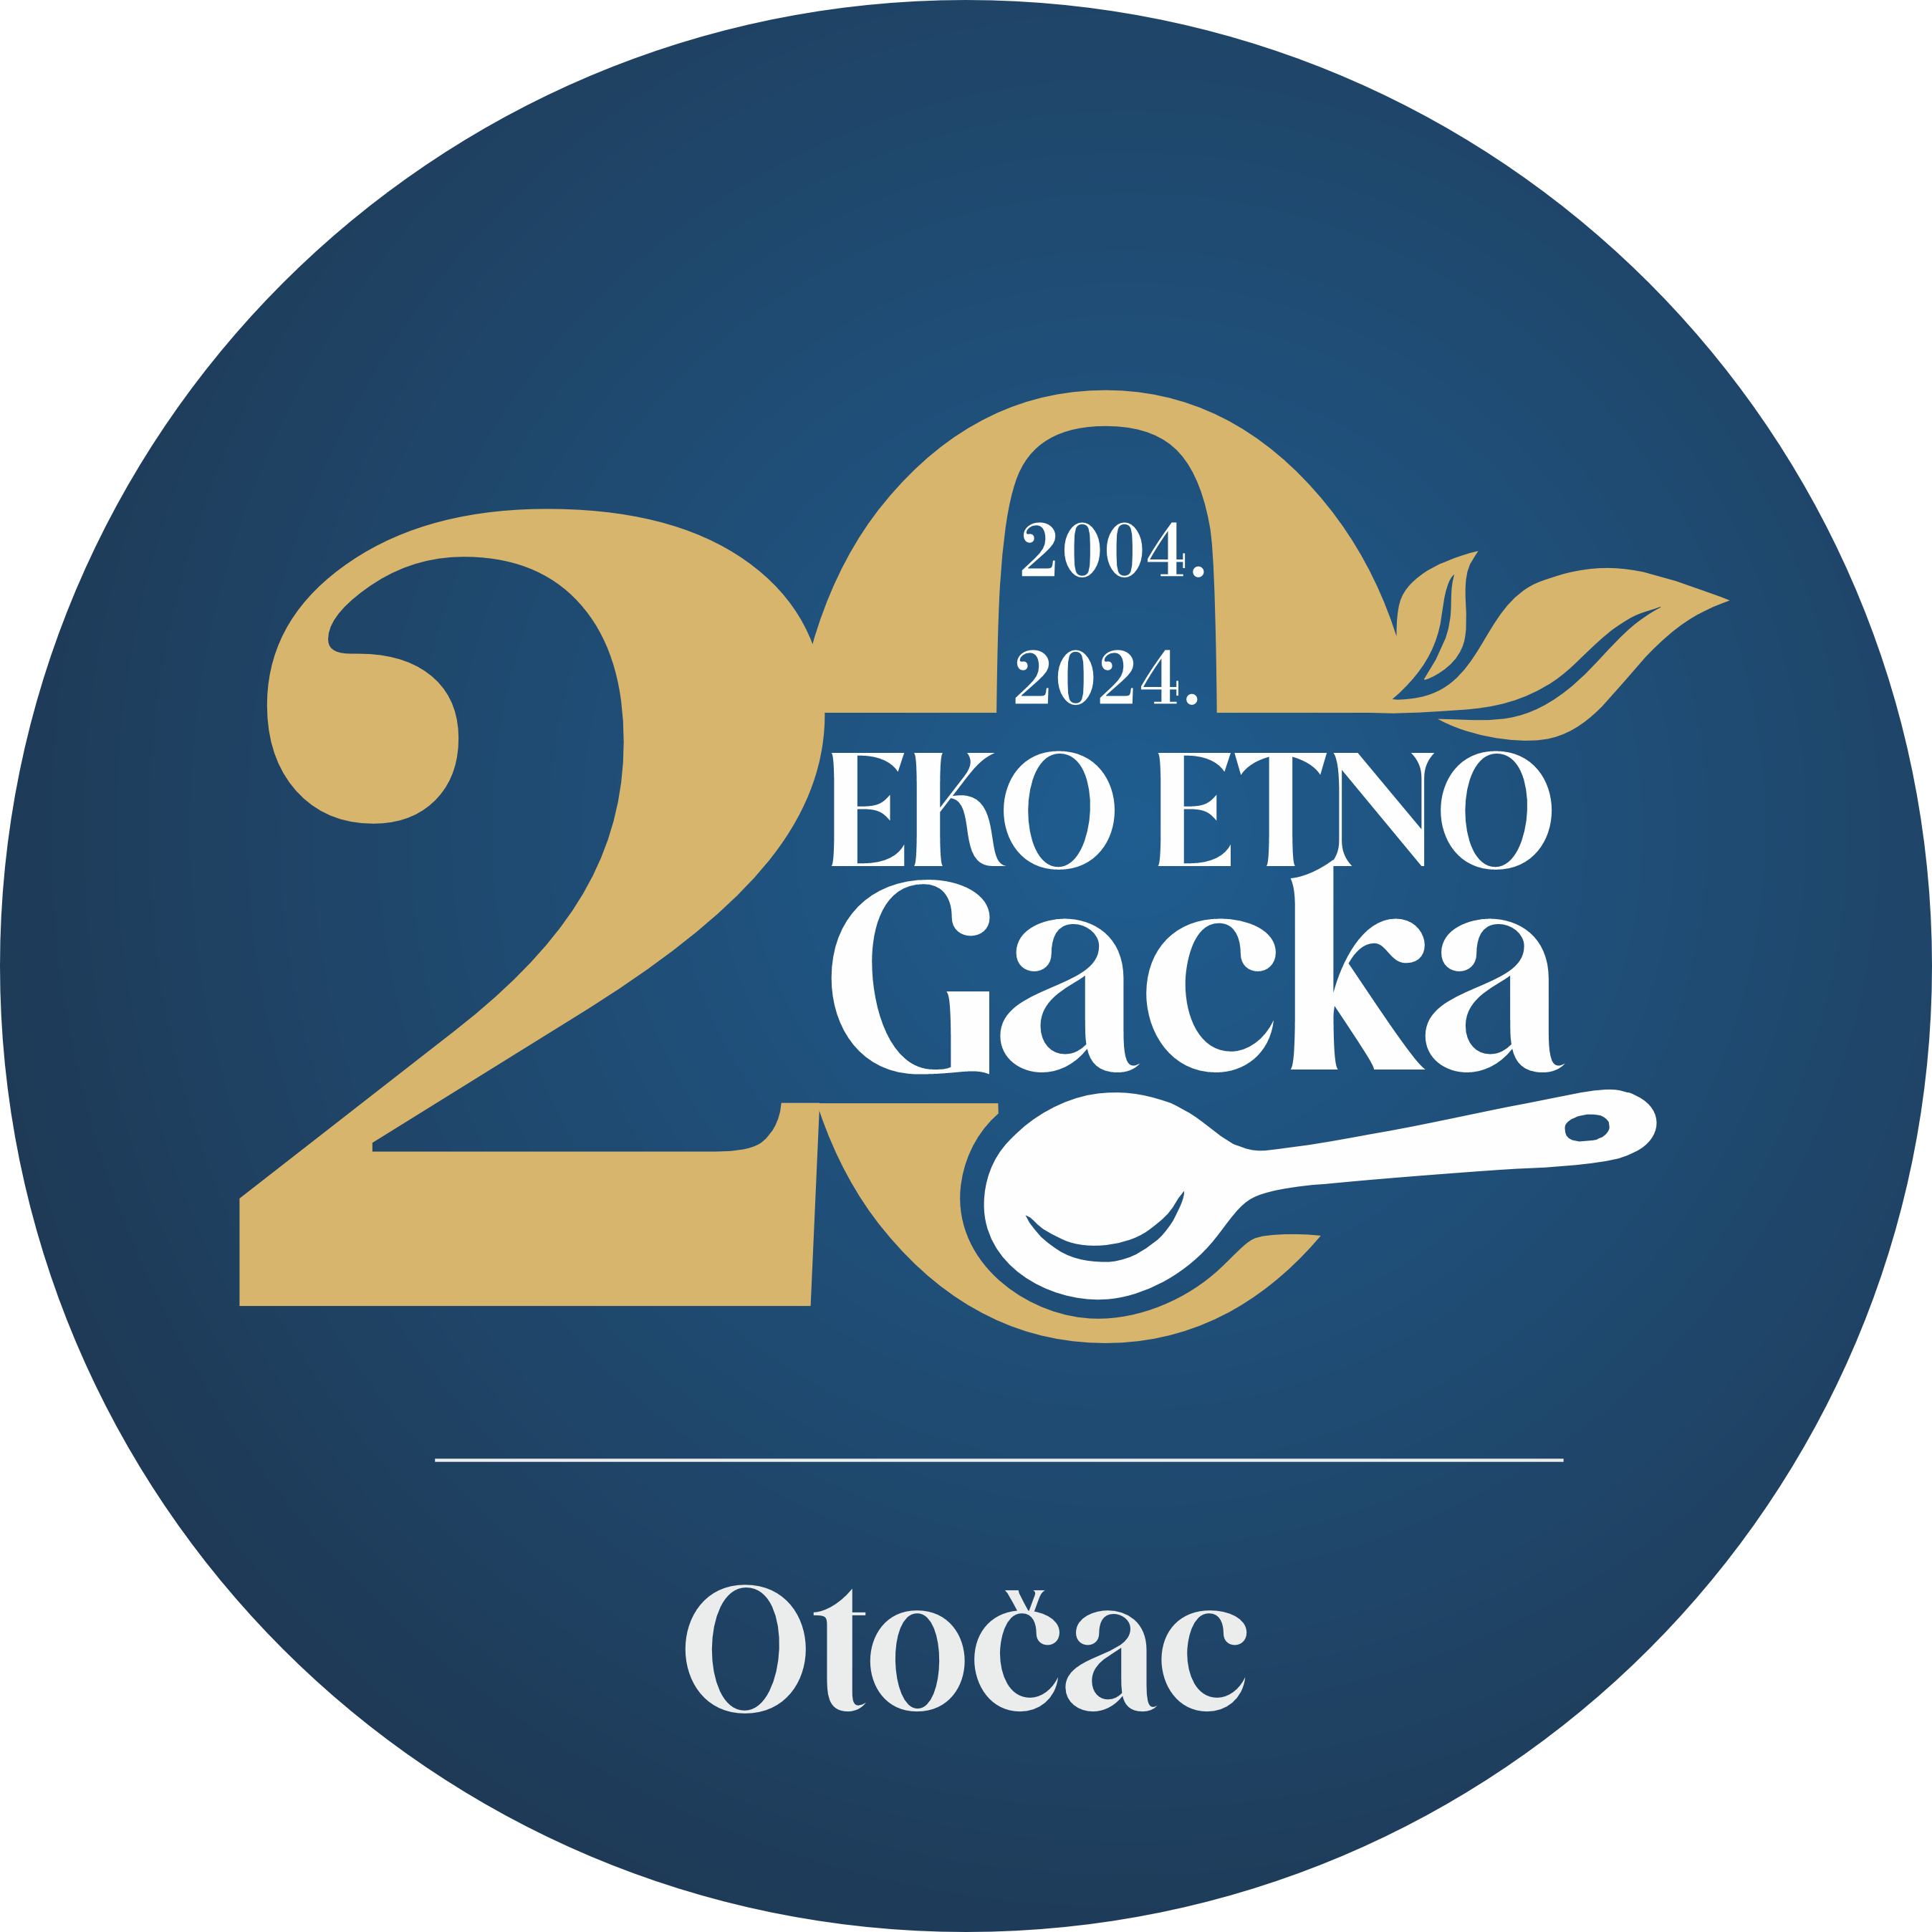 Još 3 dana do početka 20. Eko Etno Gacka manifestacije